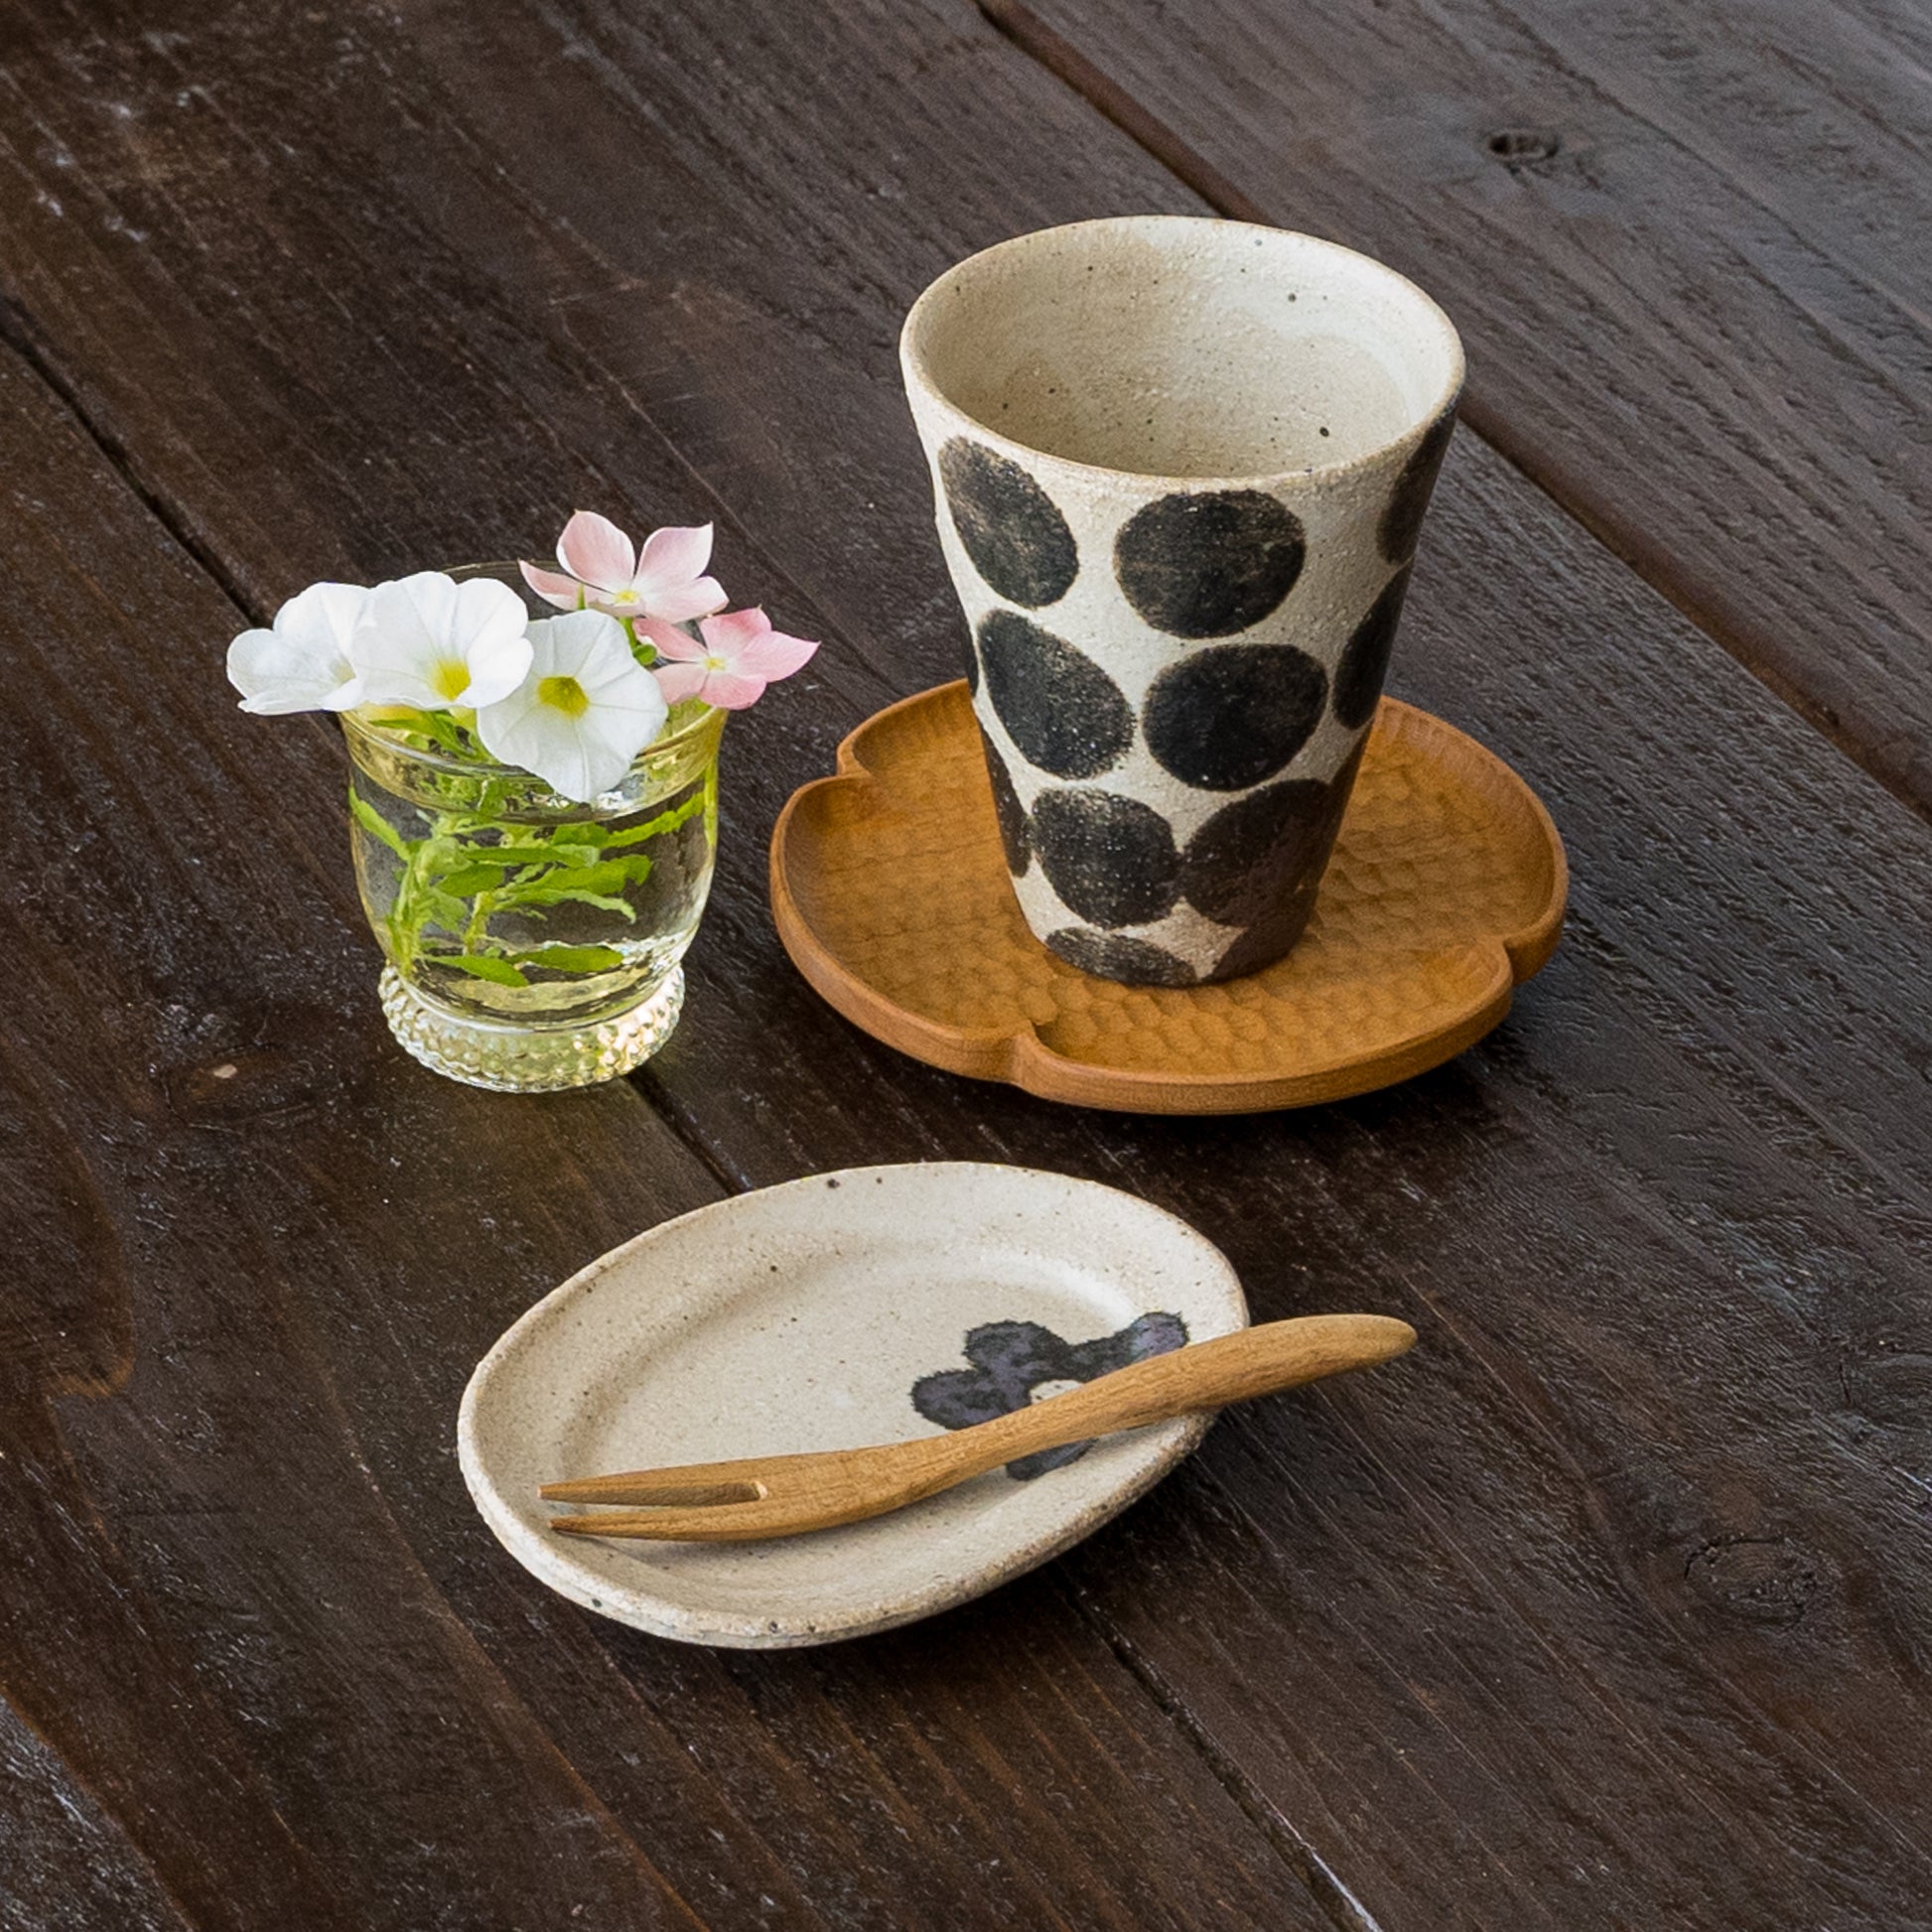 おやつの時間を可愛く彩ってくれる岡村朝子さんのミニオーバル皿とフリーカップ